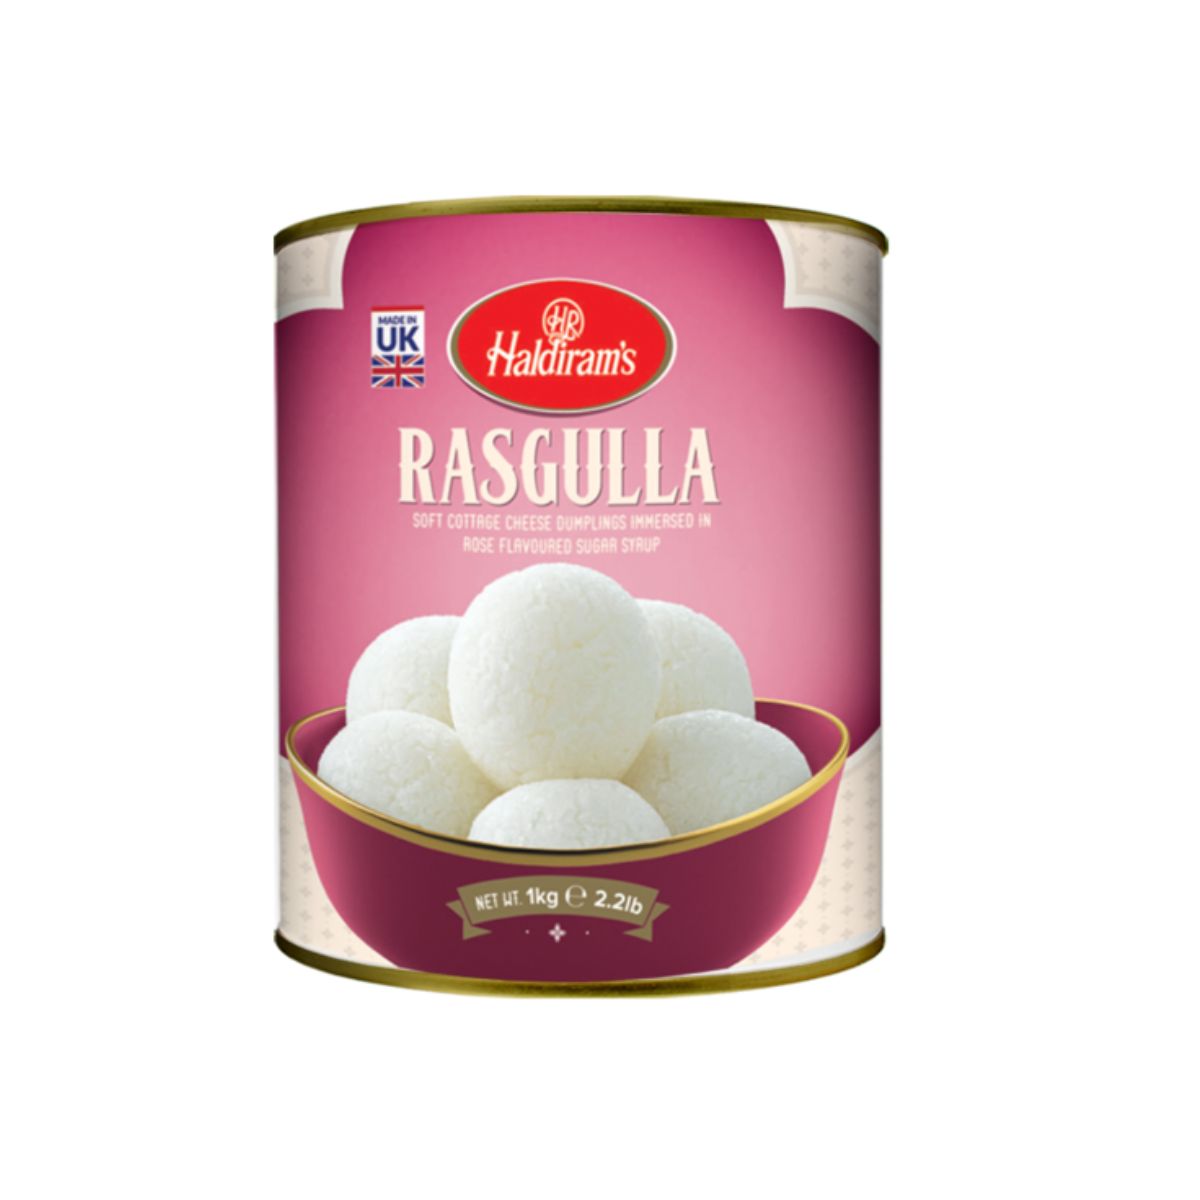 Haldiram's Rasgulla - Cheese Curd Dumplings In Rose Flavoured Sugar Syrup - 1kg